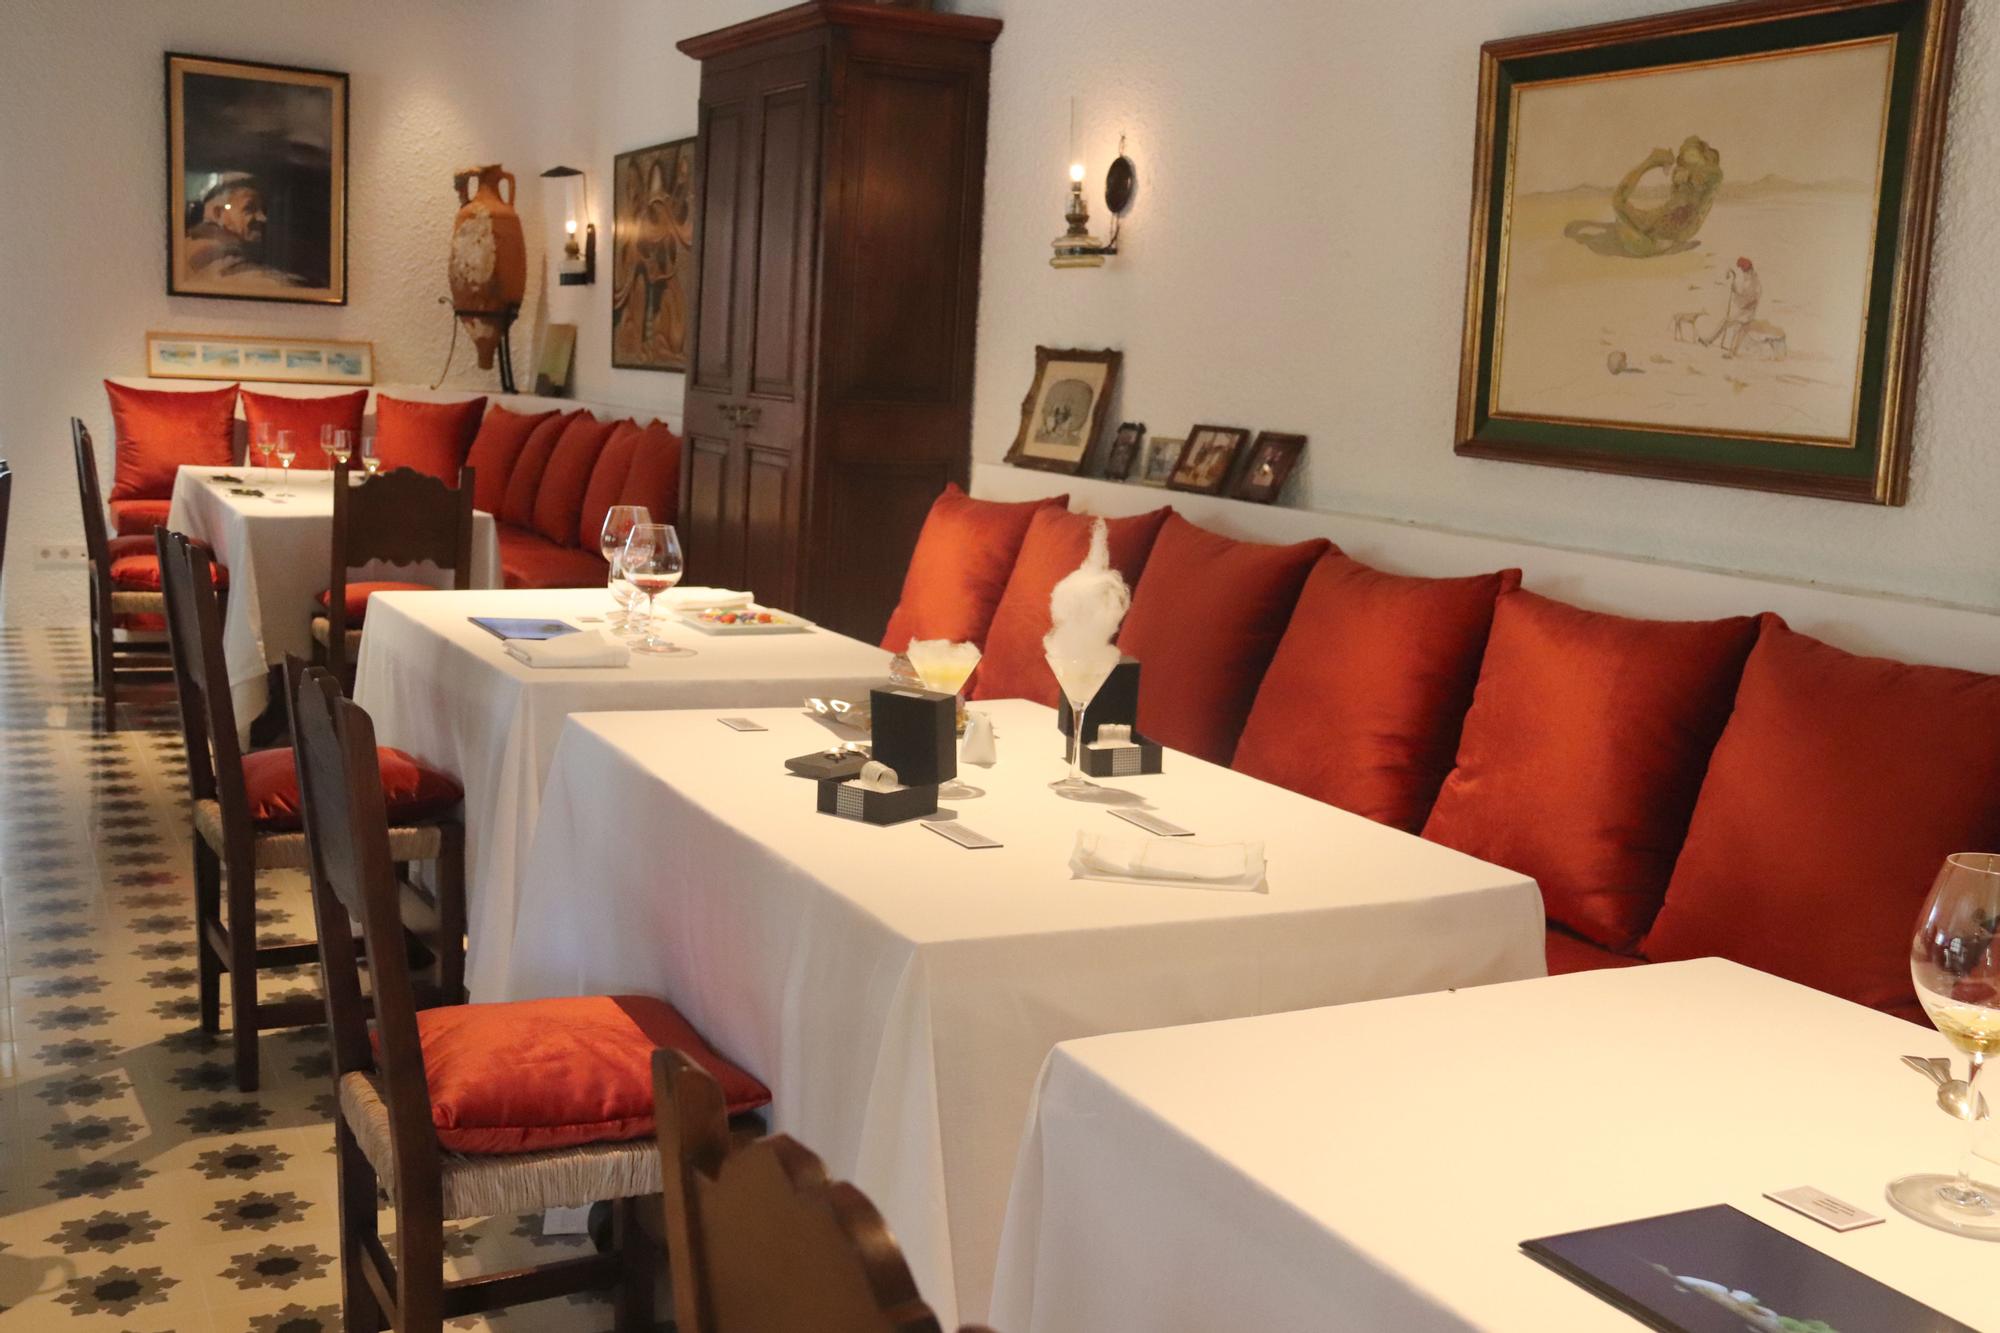 El Bulli reobre com a museu 12 anys després per "emocionar" i "divulgar" el llegat del restaurant